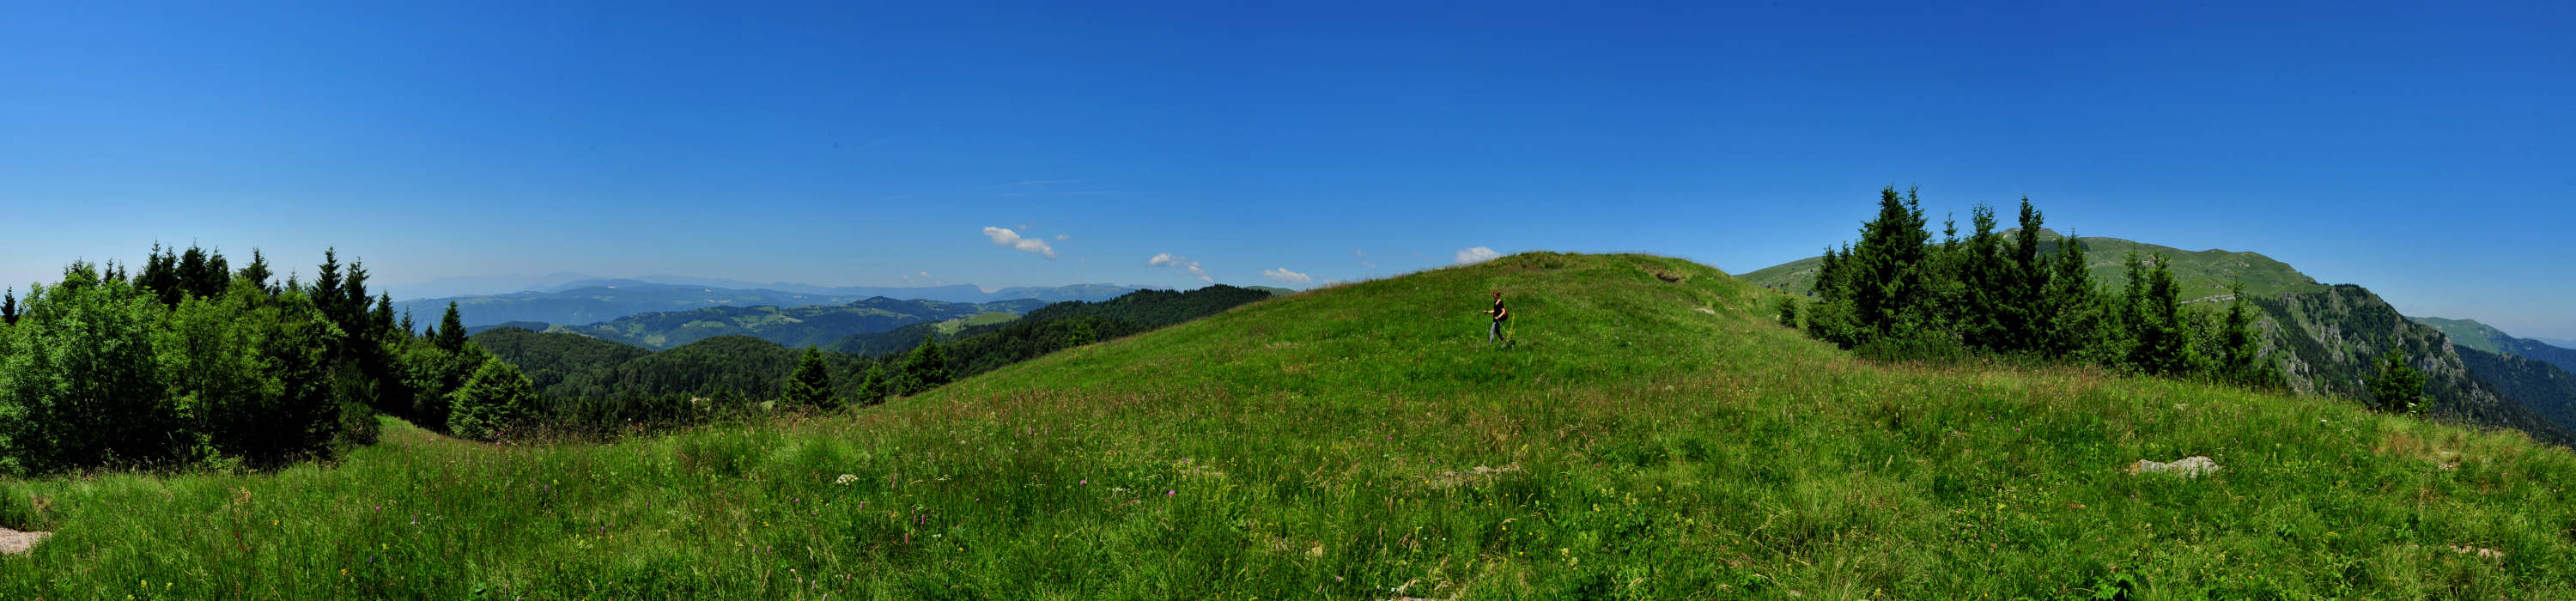 Monte Grappa, Legnarola Saline - fotografia panoramica